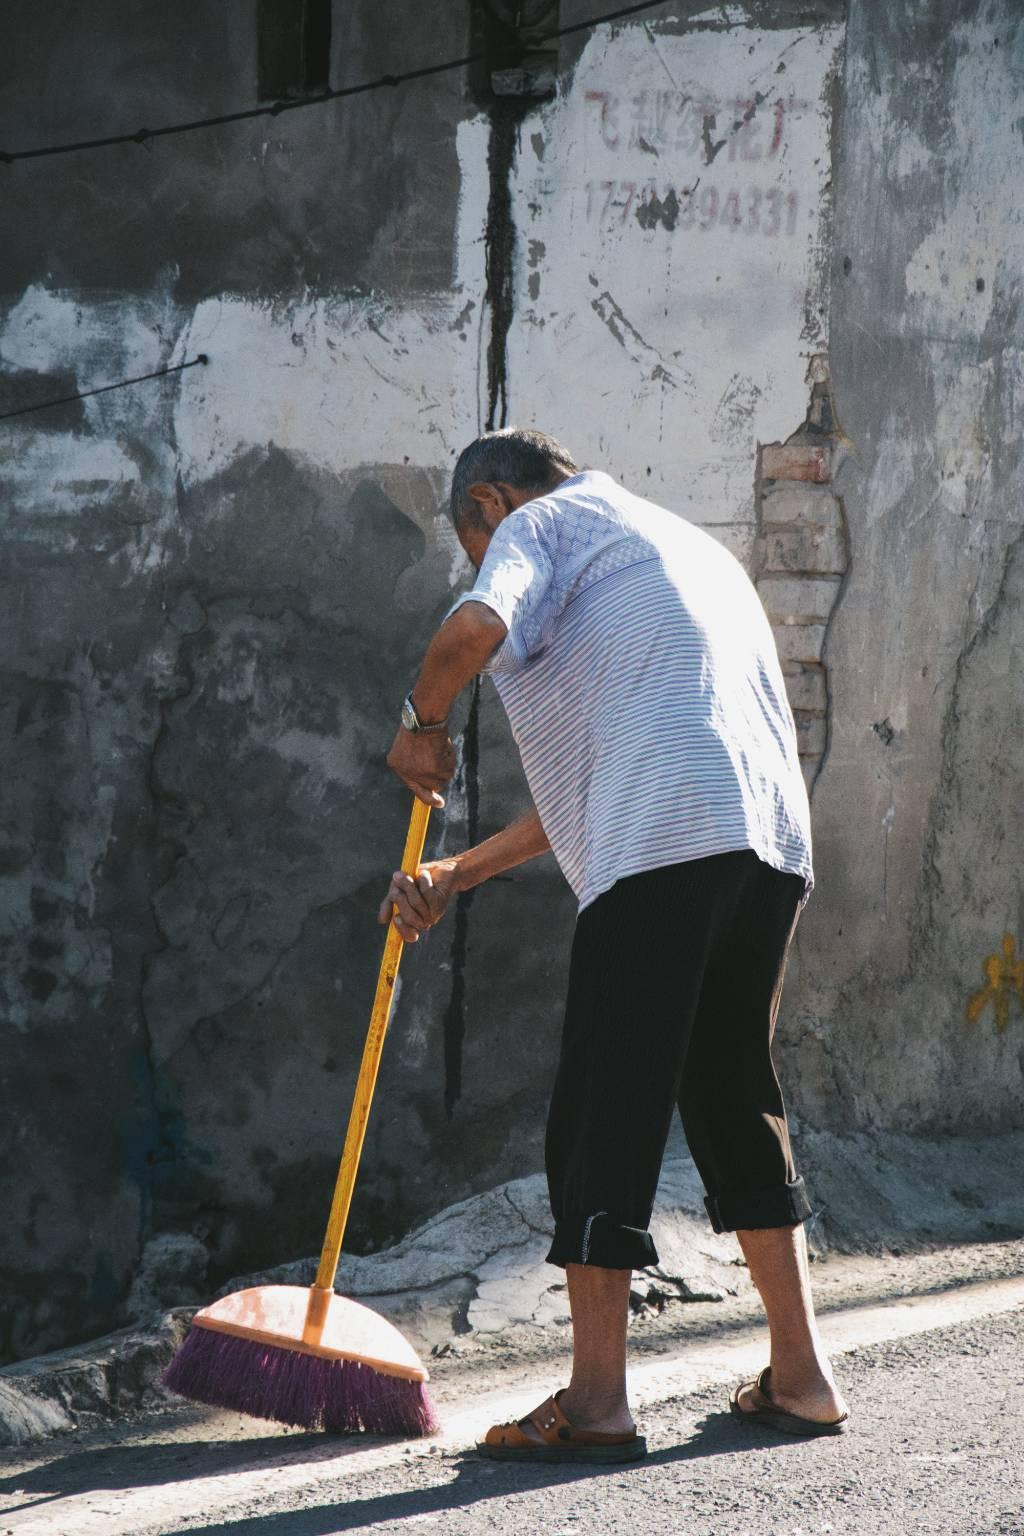 作品名为《打扫卫生》，其龙村的环境整治做的如此只好，离不开每一个村民的努力，他们每天都会清扫自己家周围的街道，以此来保持街道的环境。